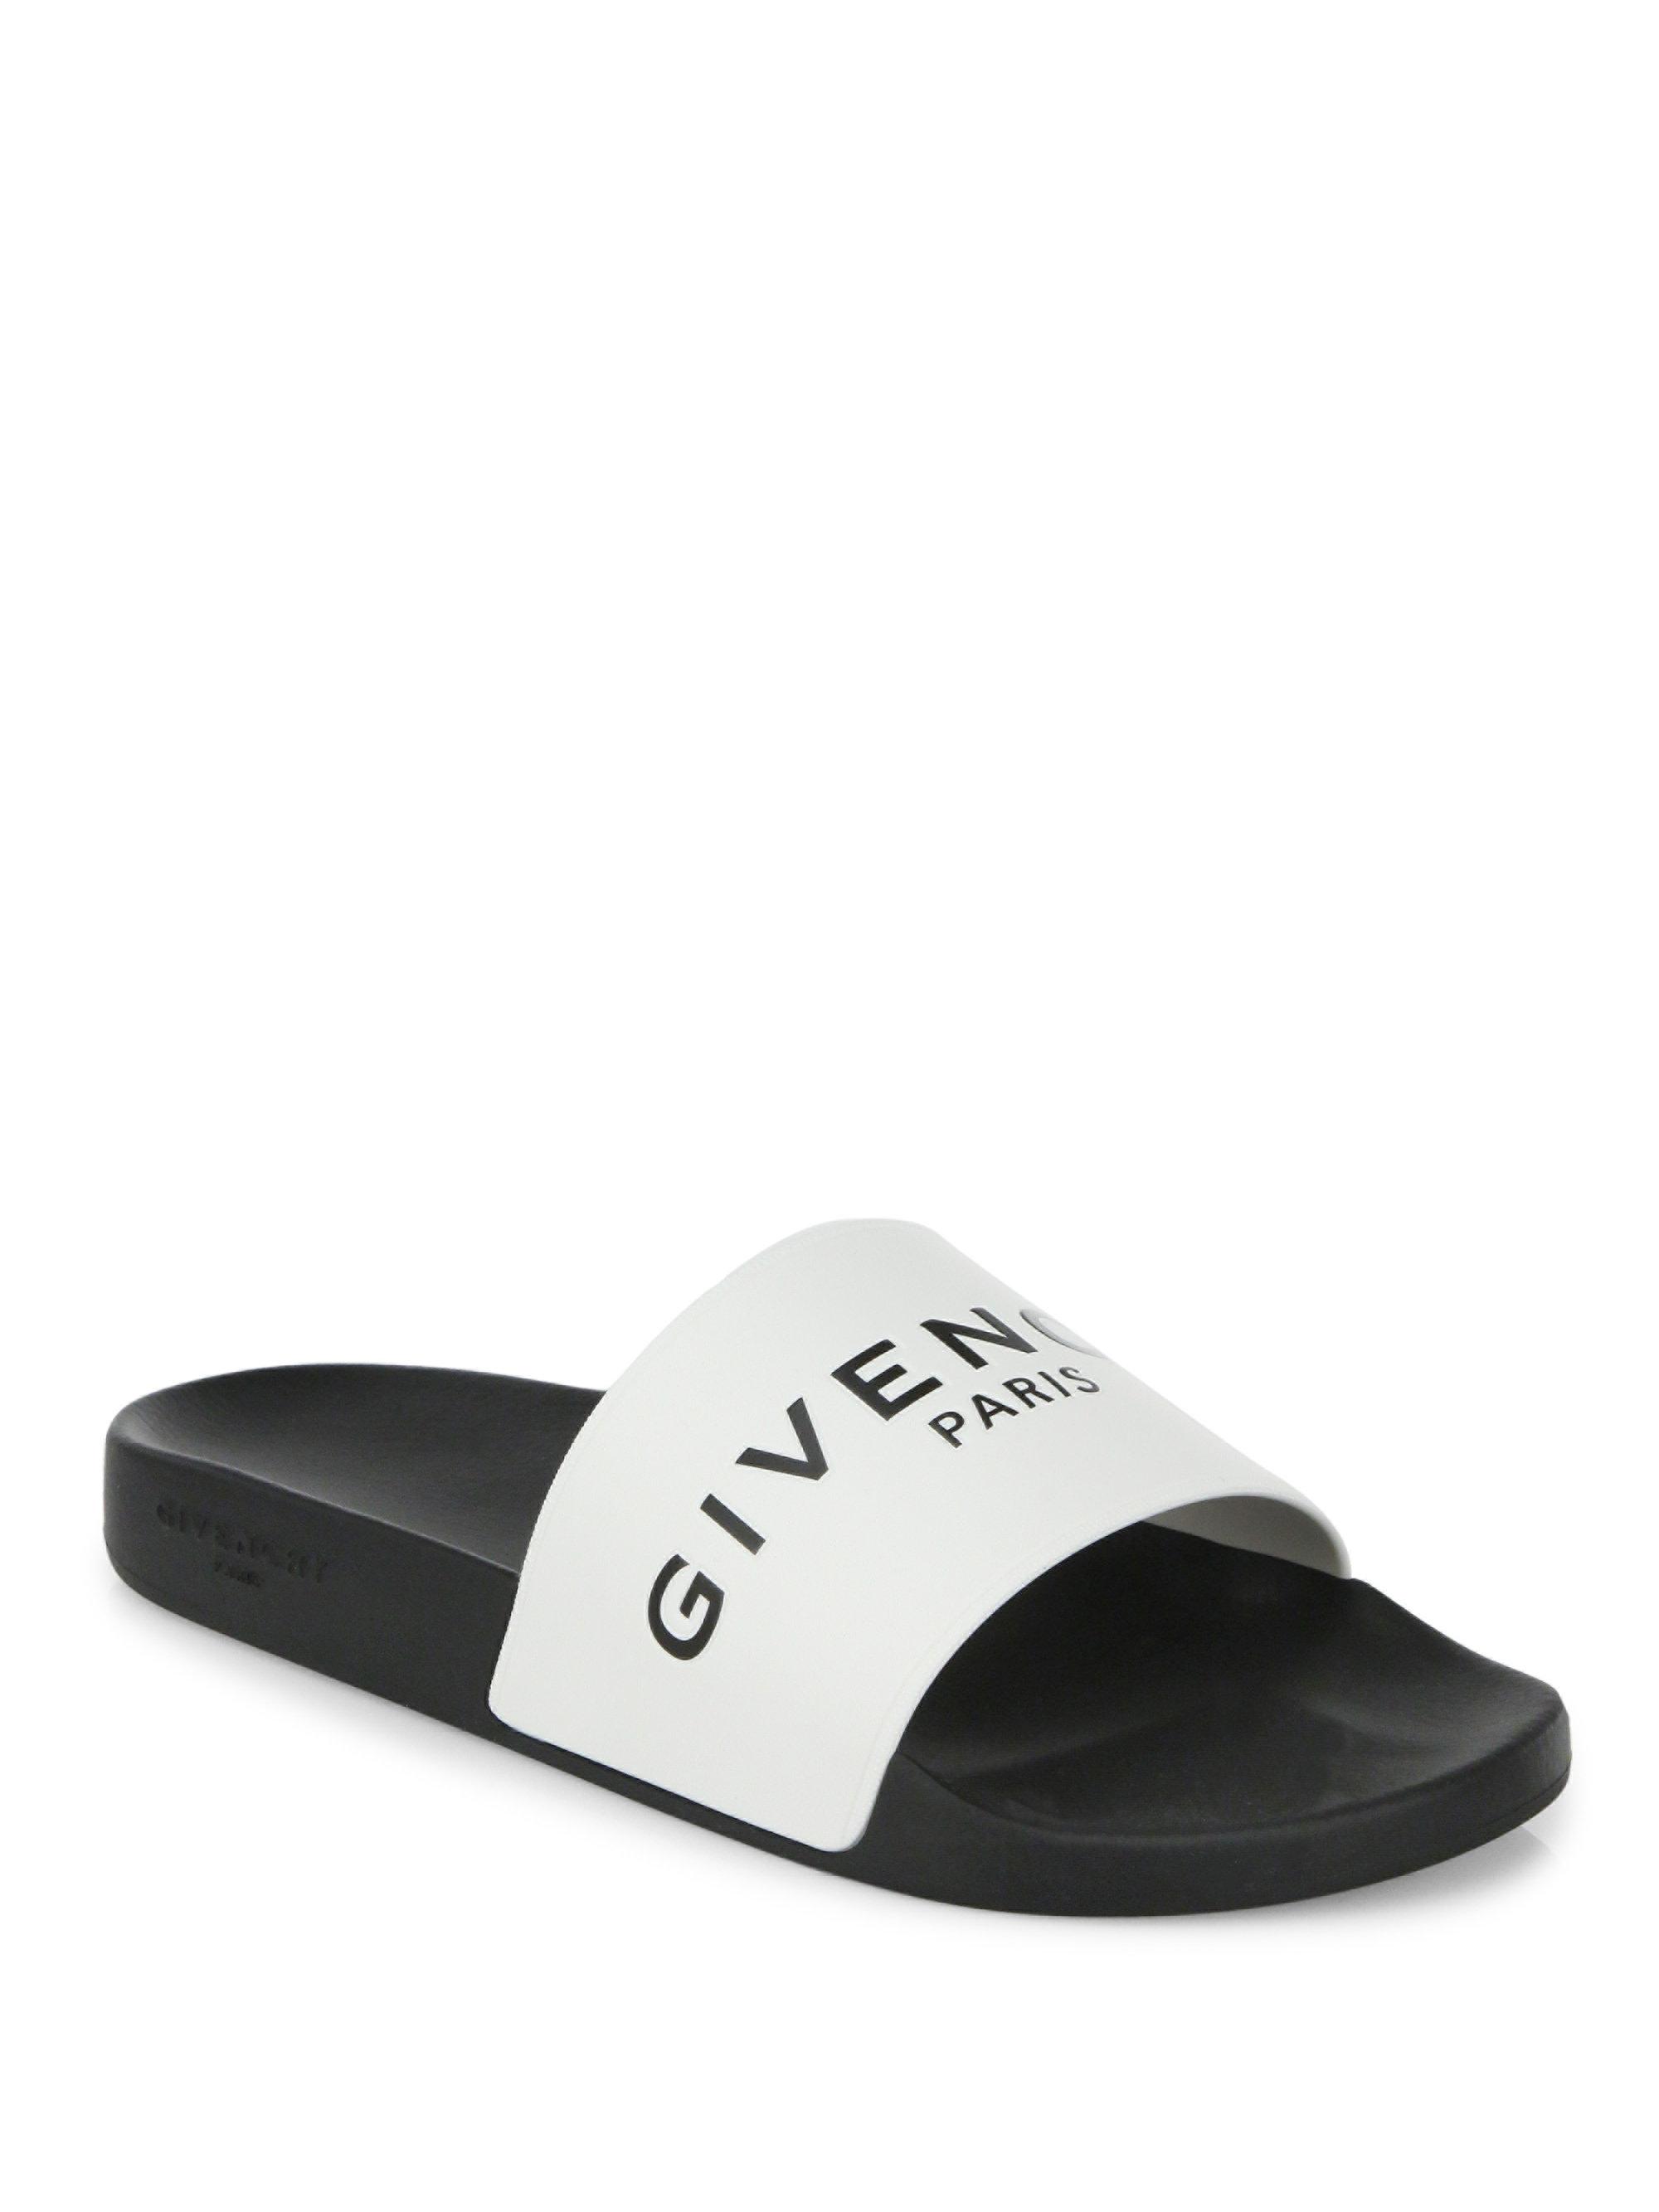 Givenchy Logo Rubber Slides in Black 